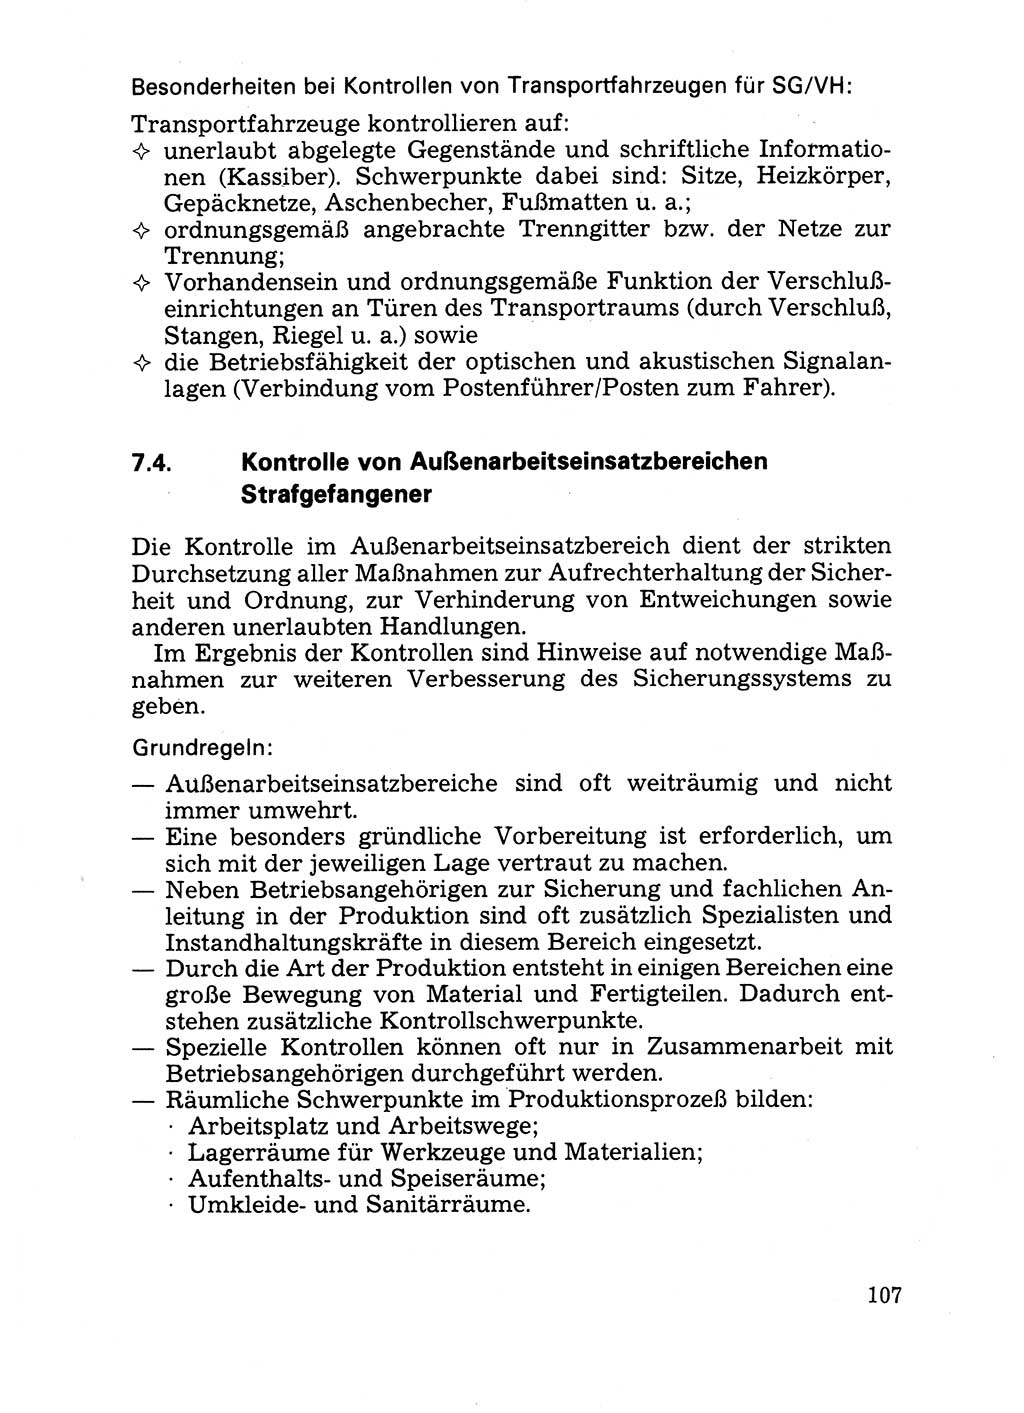 Handbuch für operative Dienste, Abteilung Strafvollzug (SV) [Ministerium des Innern (MdI) Deutsche Demokratische Republik (DDR)] 1981, Seite 107 (Hb. op. D. Abt. SV MdI DDR 1981, S. 107)